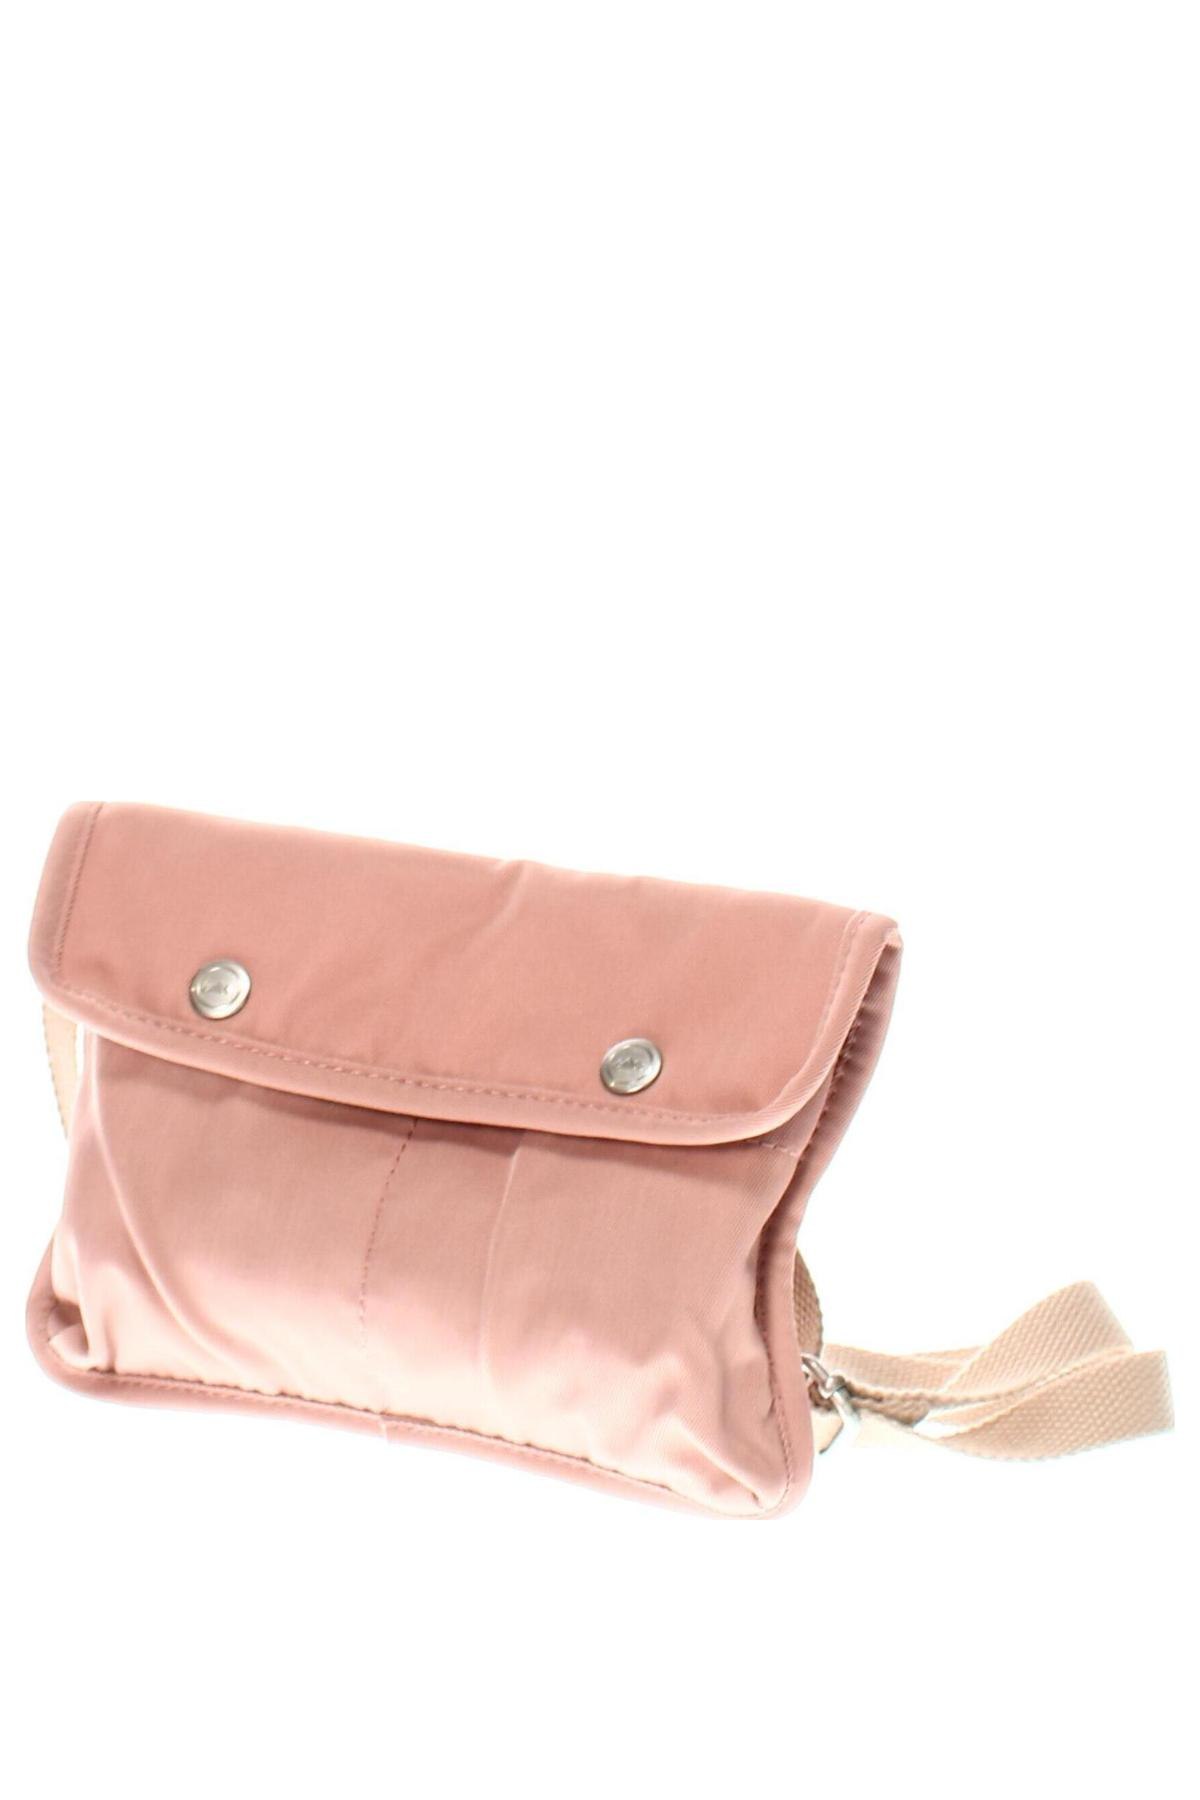 Γυναικεία τσάντα Doughnut, Χρώμα Ρόζ , Τιμή 25,36 €